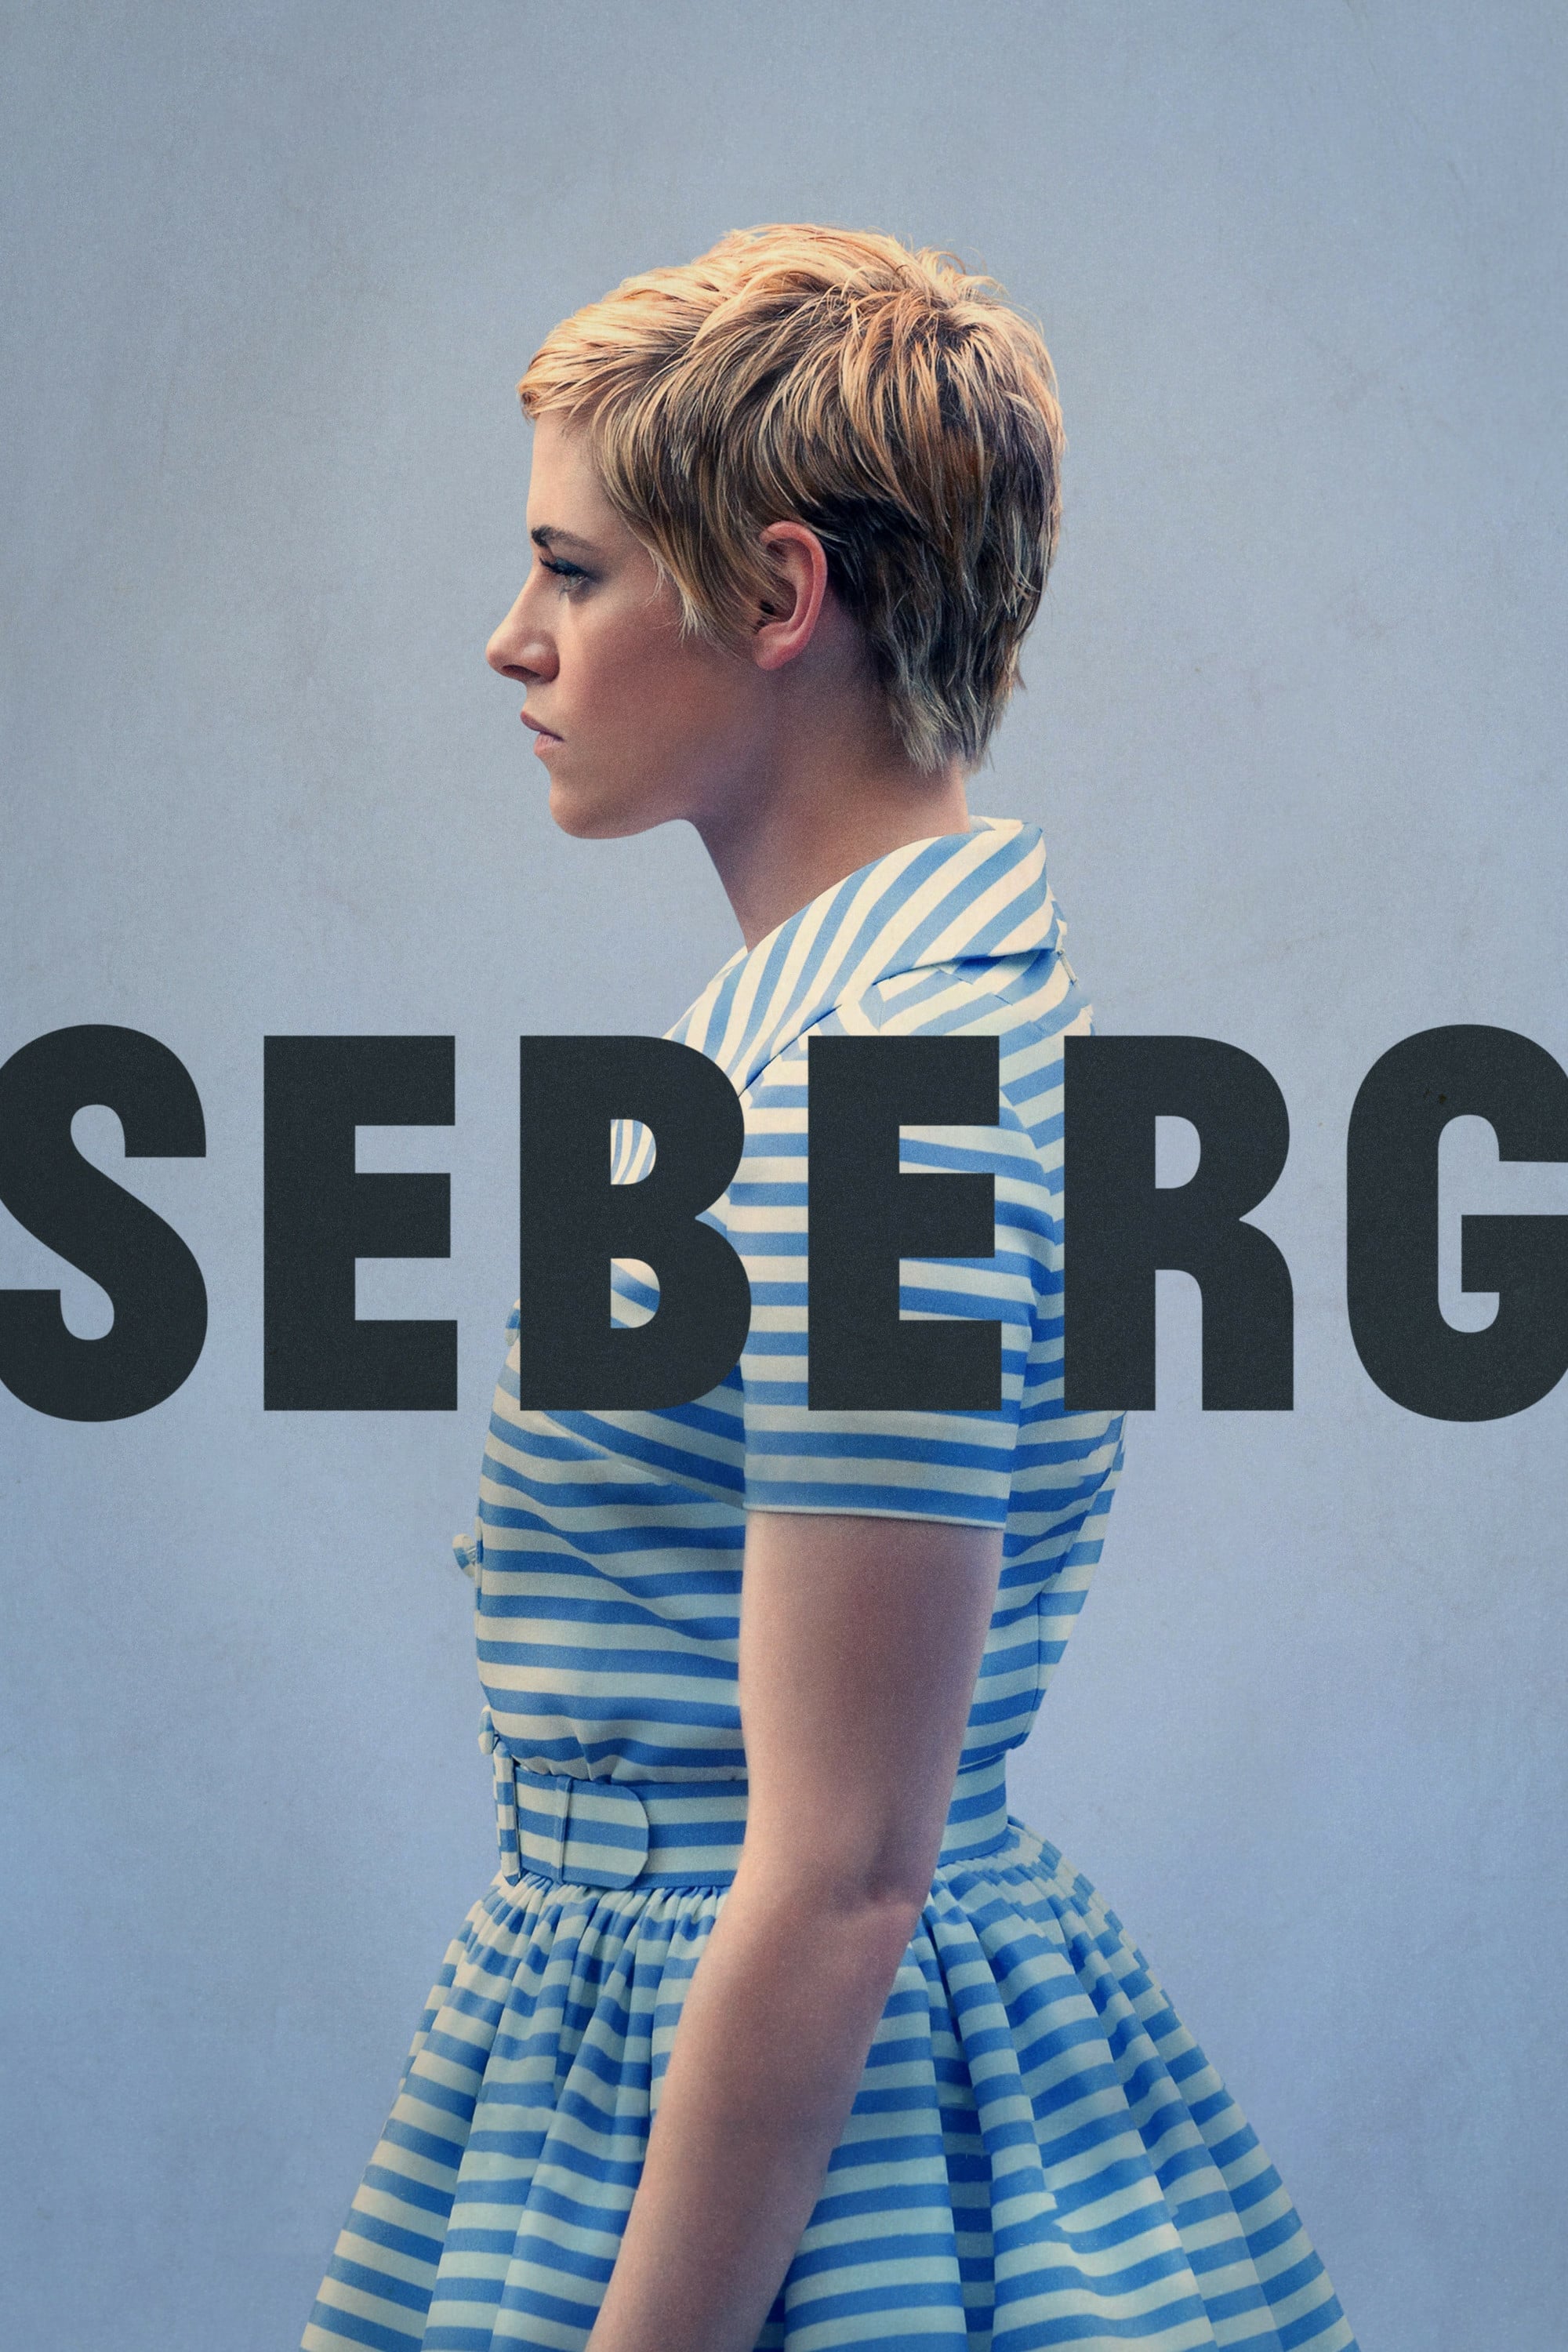 Seberg - Seberg (2019)